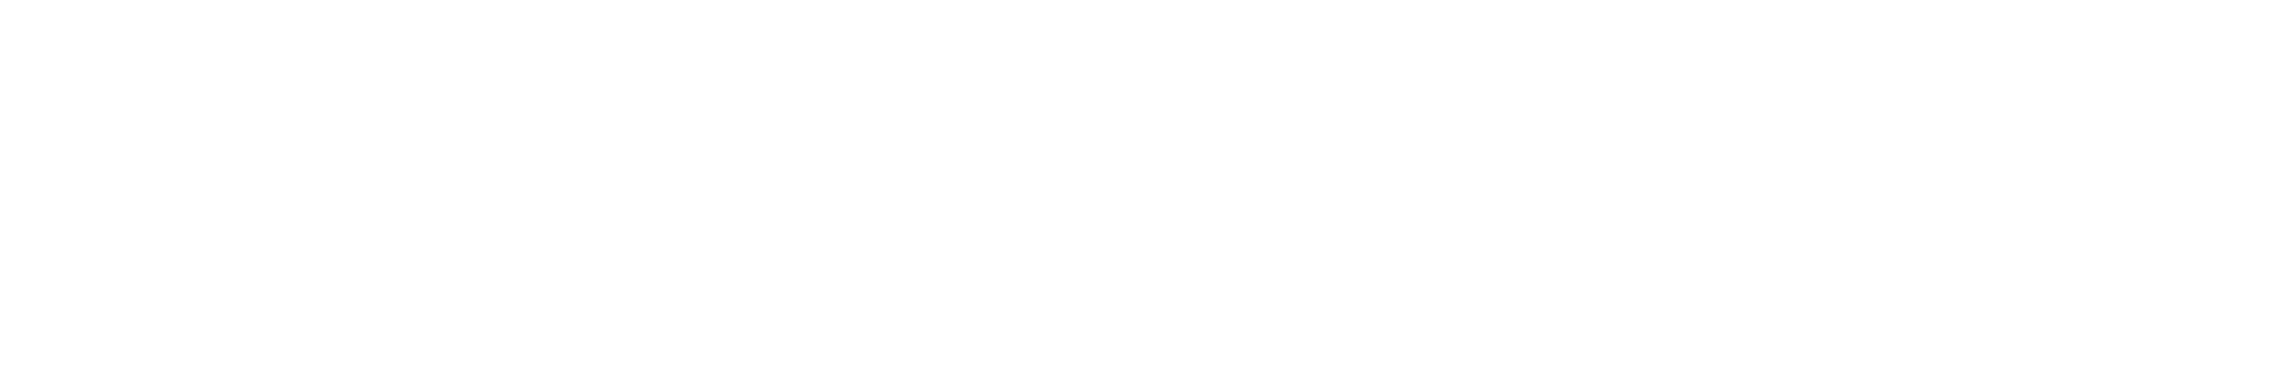 Women in eDiscovery Logo